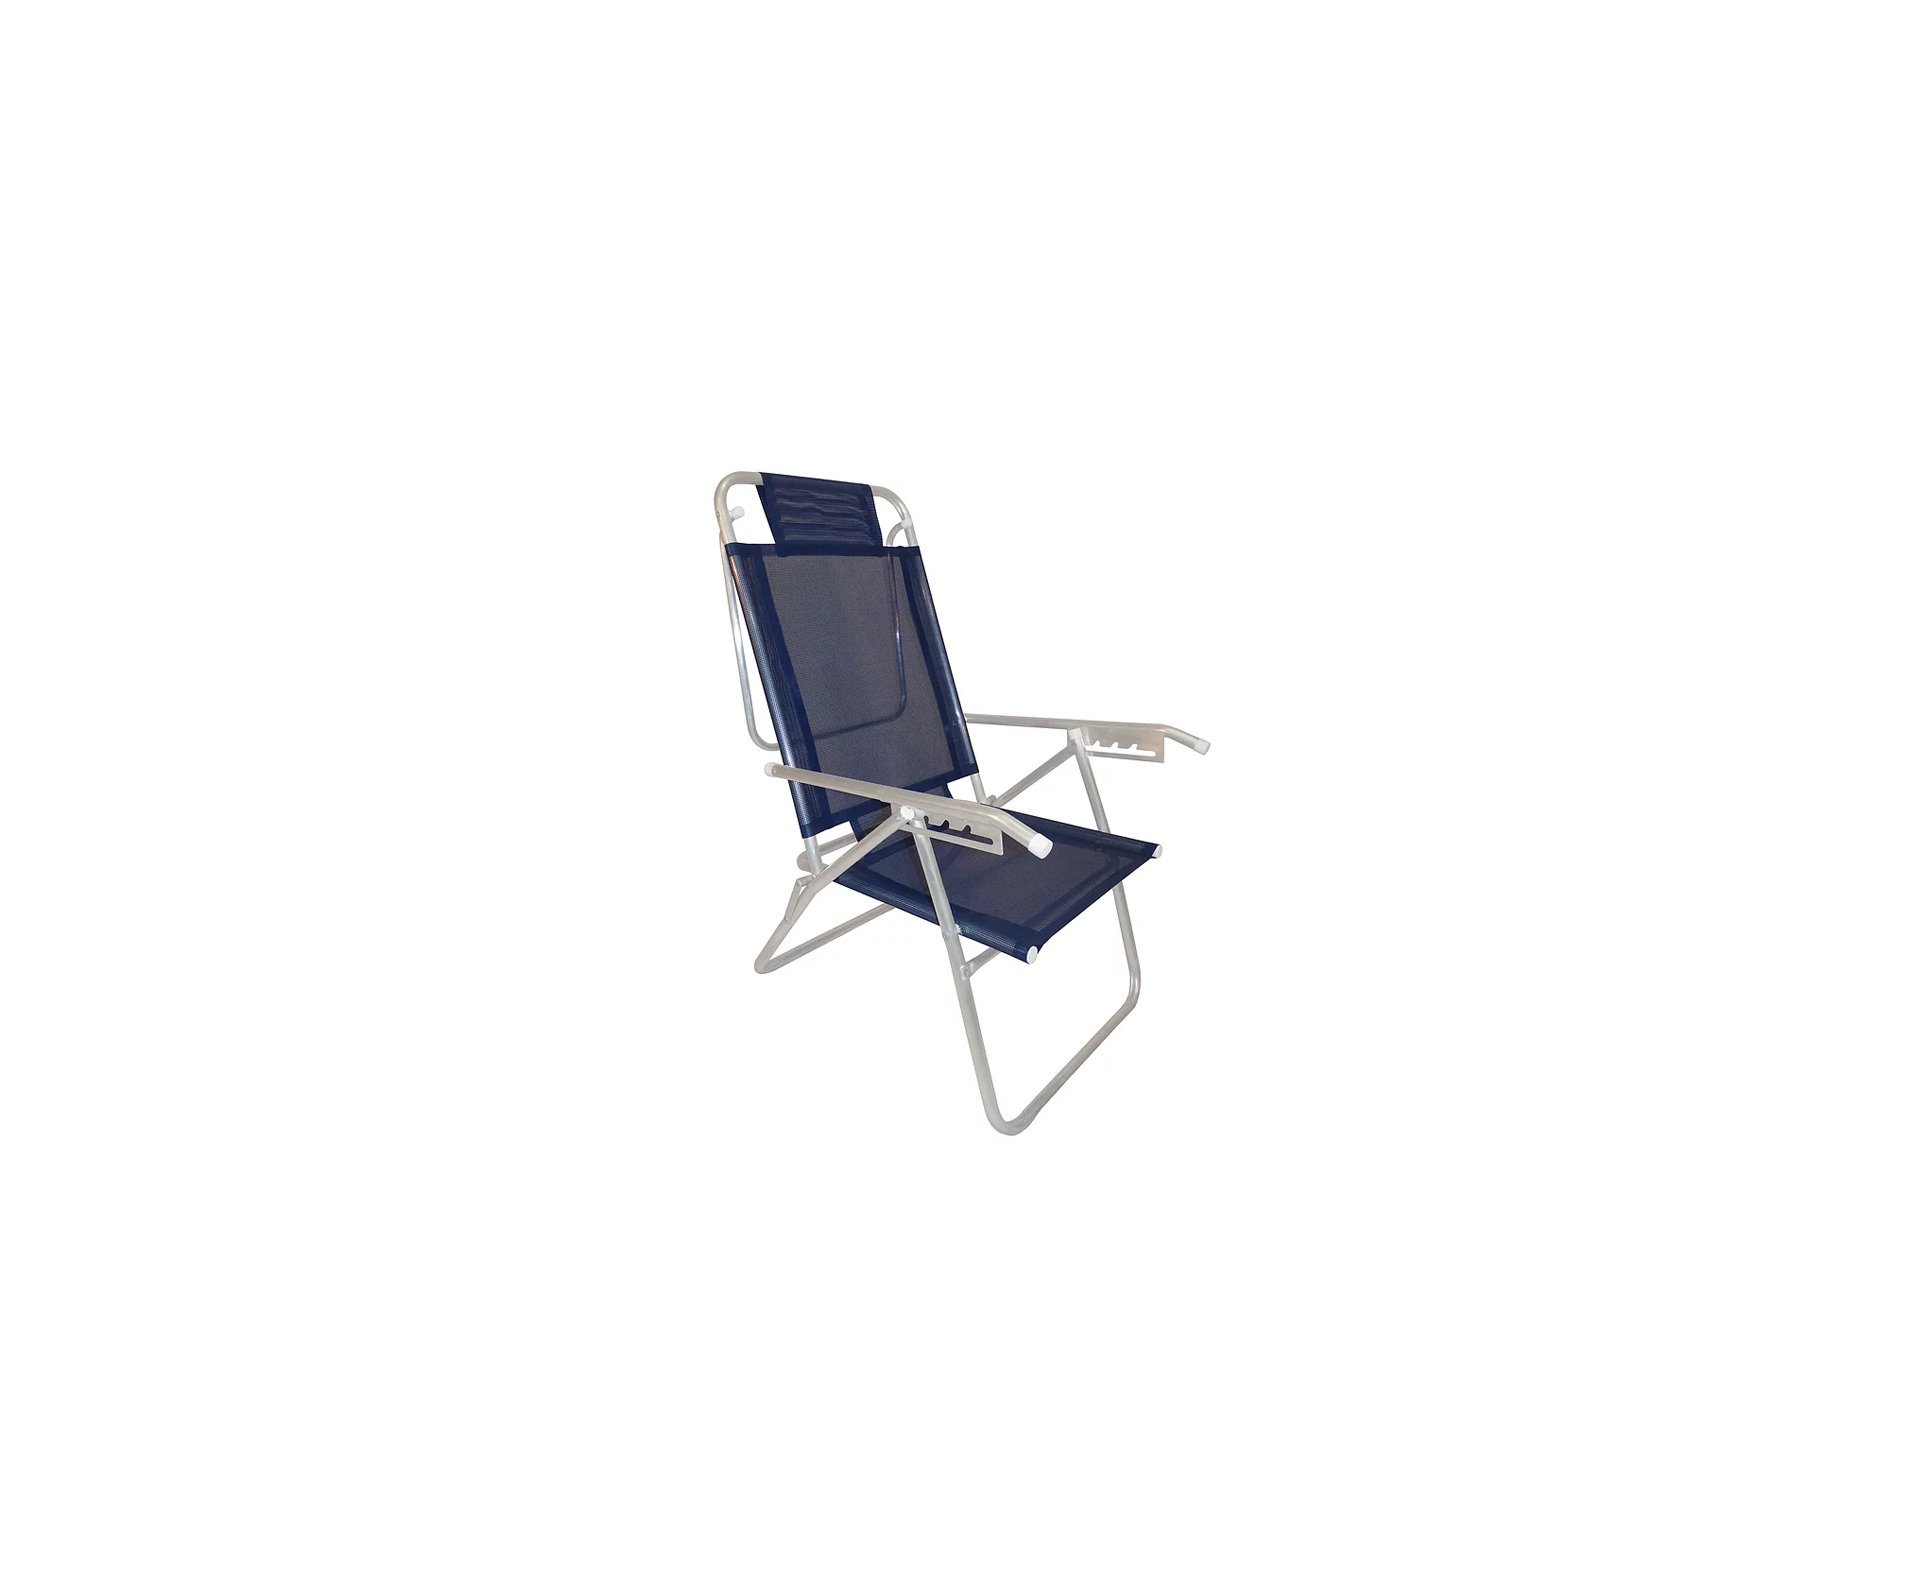 Cadeira Reclinavel Zaka Em Aluminio 5 Posições Infinita Up Marinho